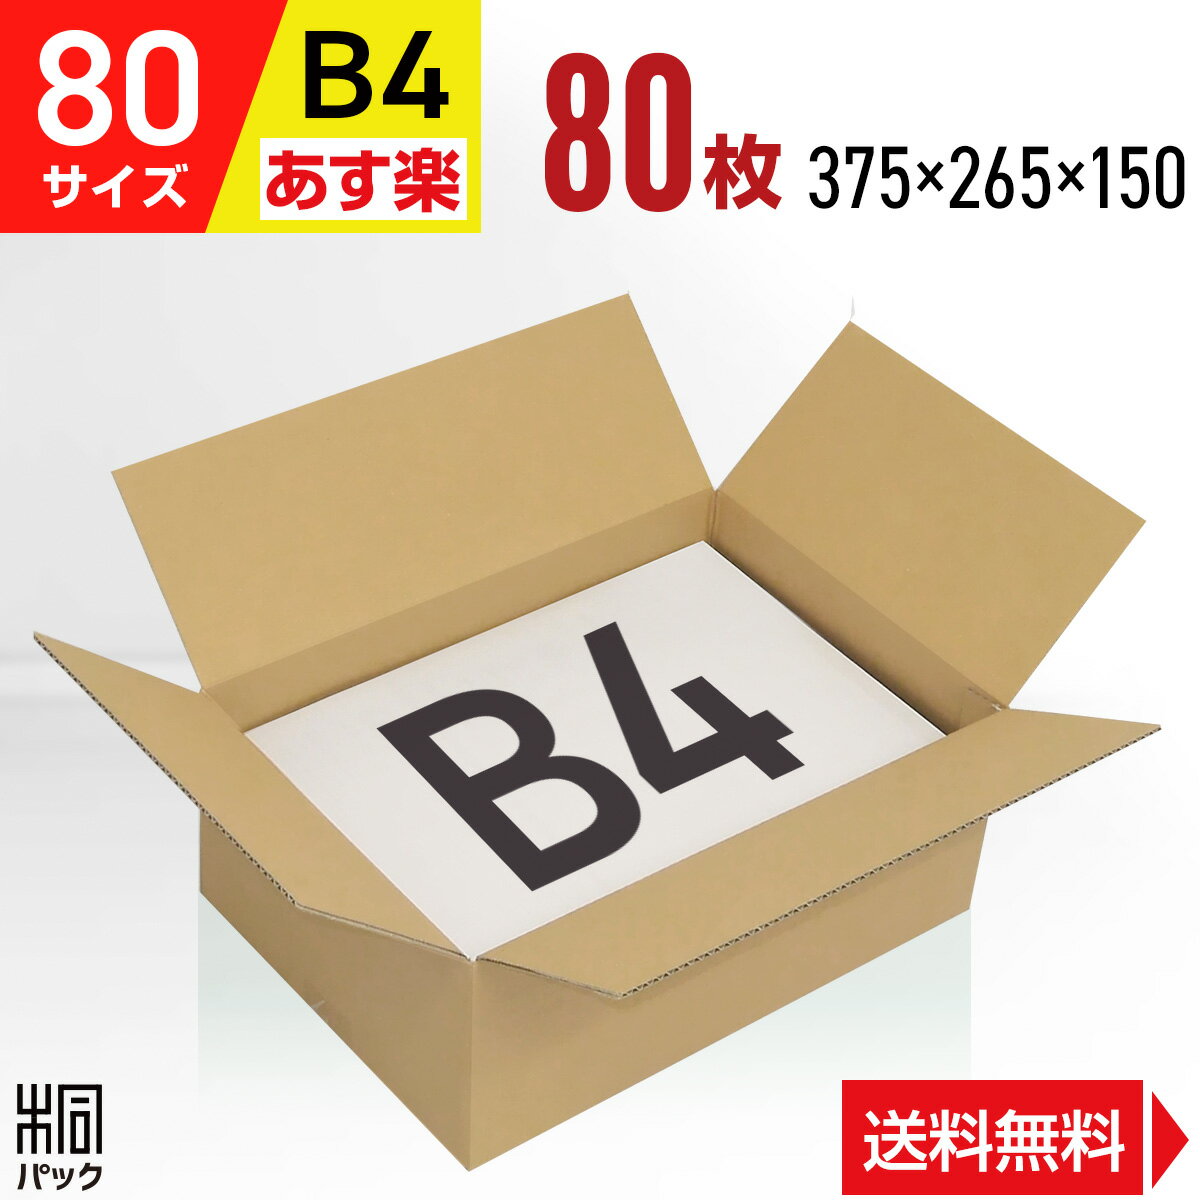 段ボール 箱 80サイズ B4 便利線入り 80枚 (3mm厚 375x265x150) 段ボール 80 B4 宅配 梱包 通販 資材 用 セット 日本…